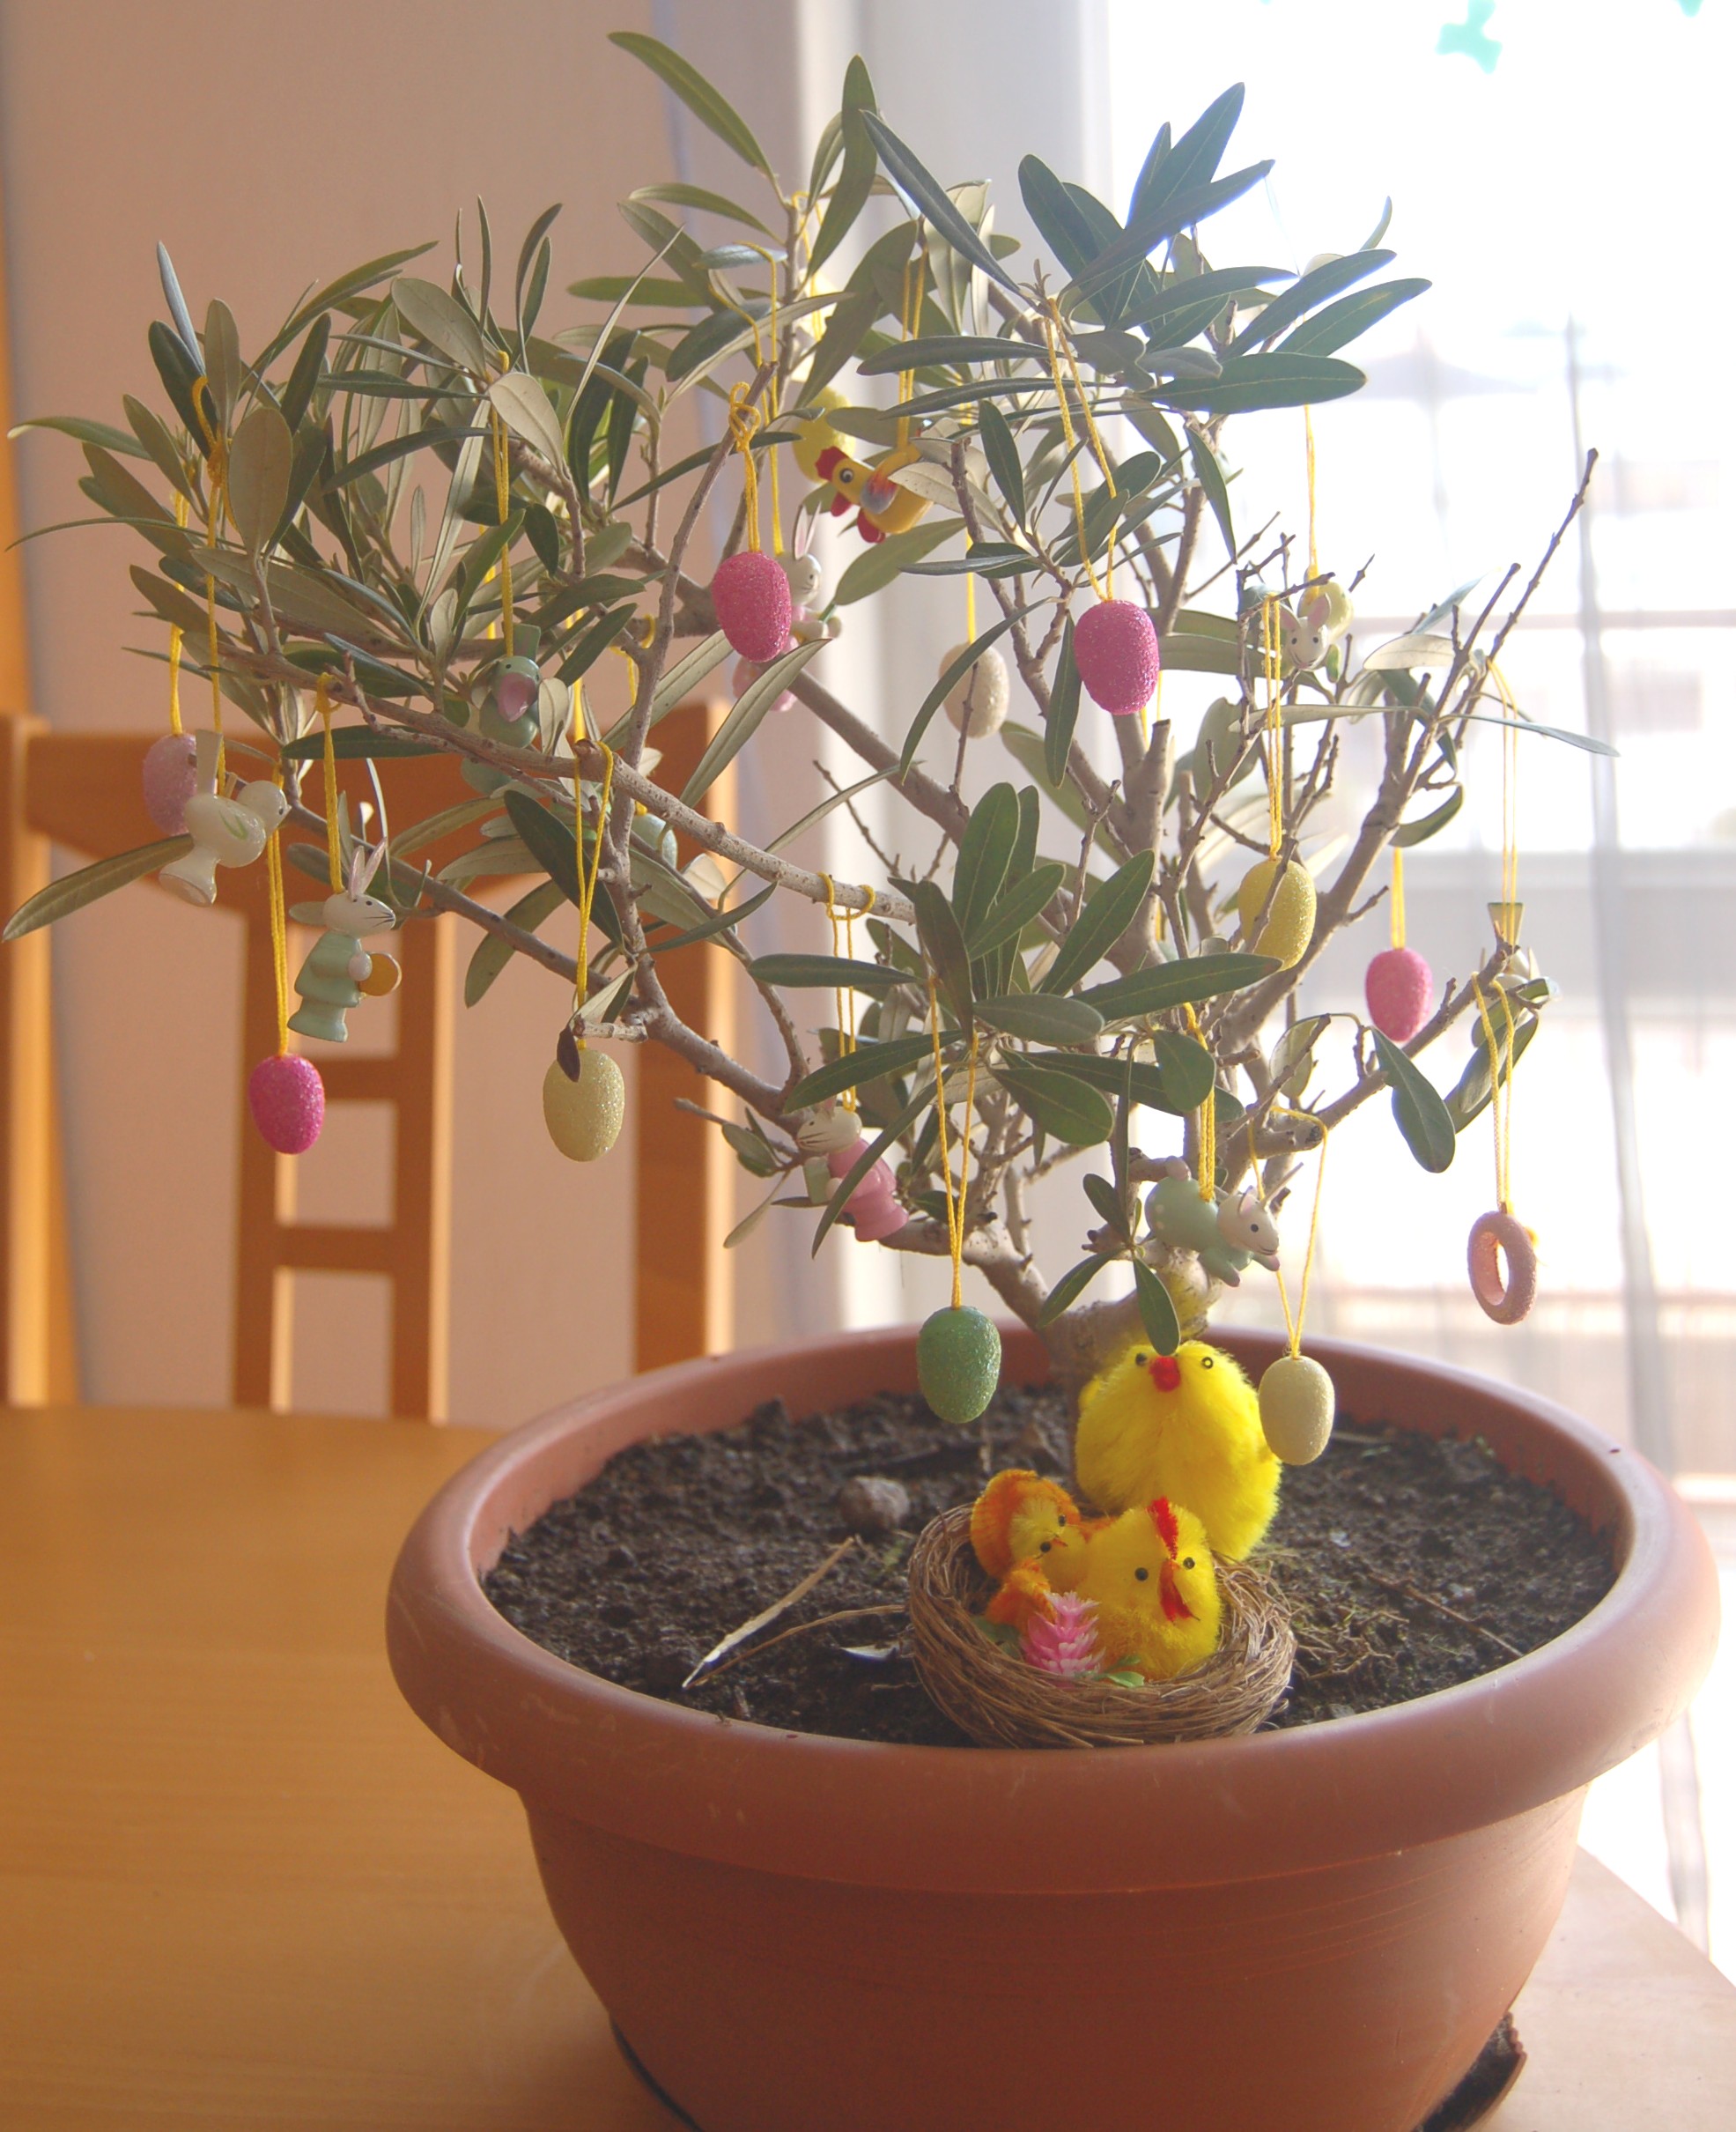 L'Albero di Pasqua, una tradizione poco conosciuta